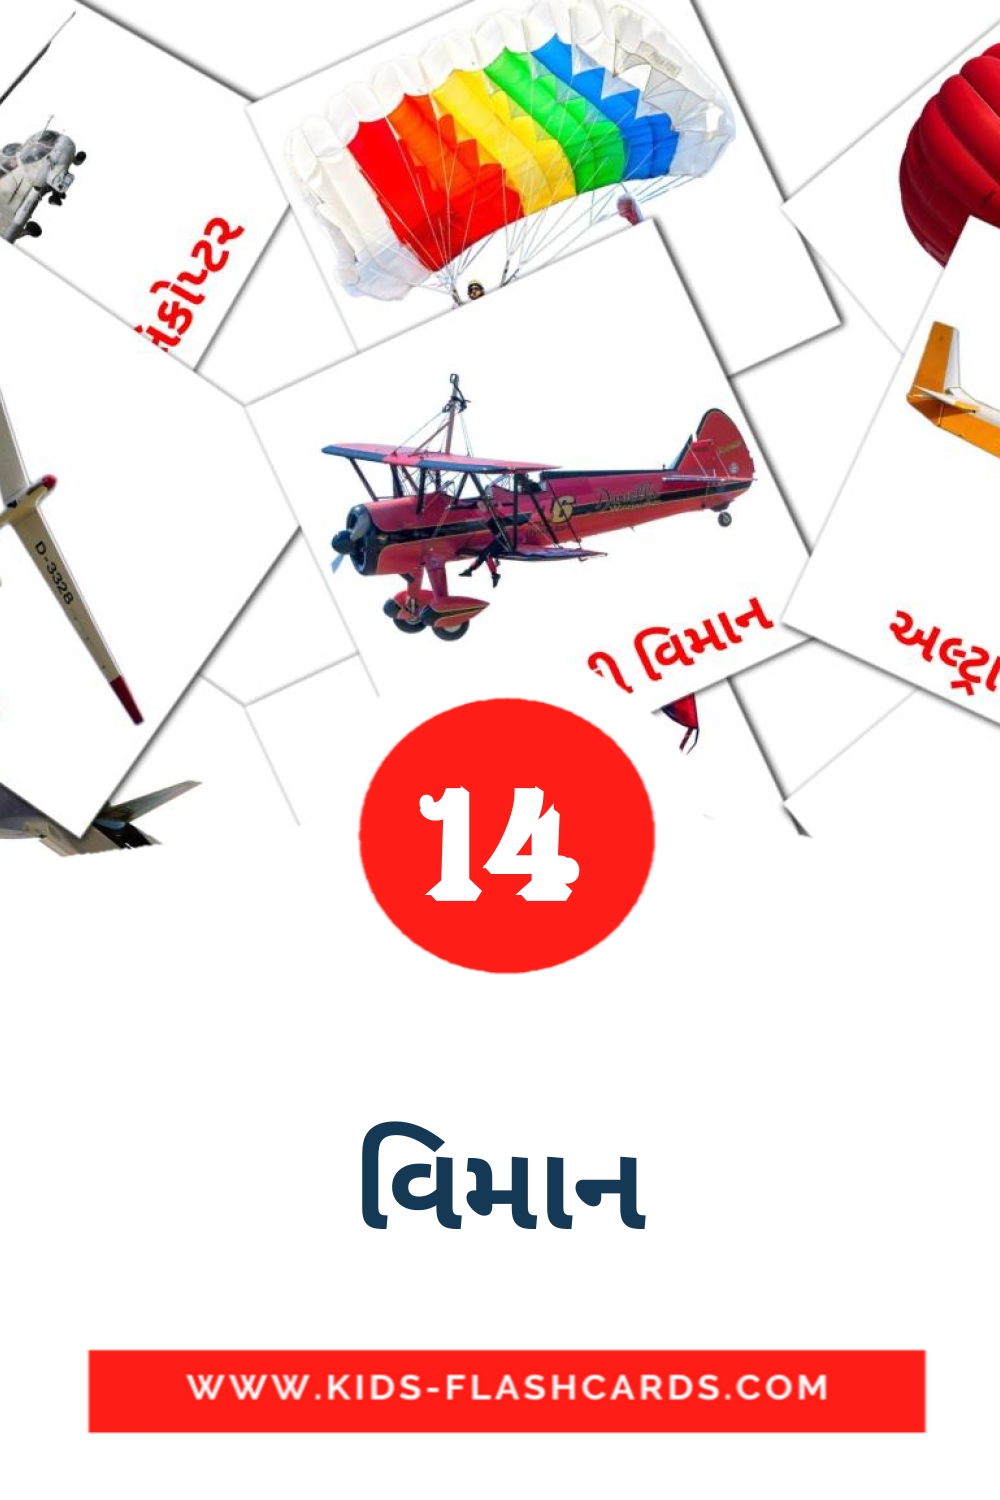 14 tarjetas didacticas de વિમાન para el jardín de infancia en gujarati